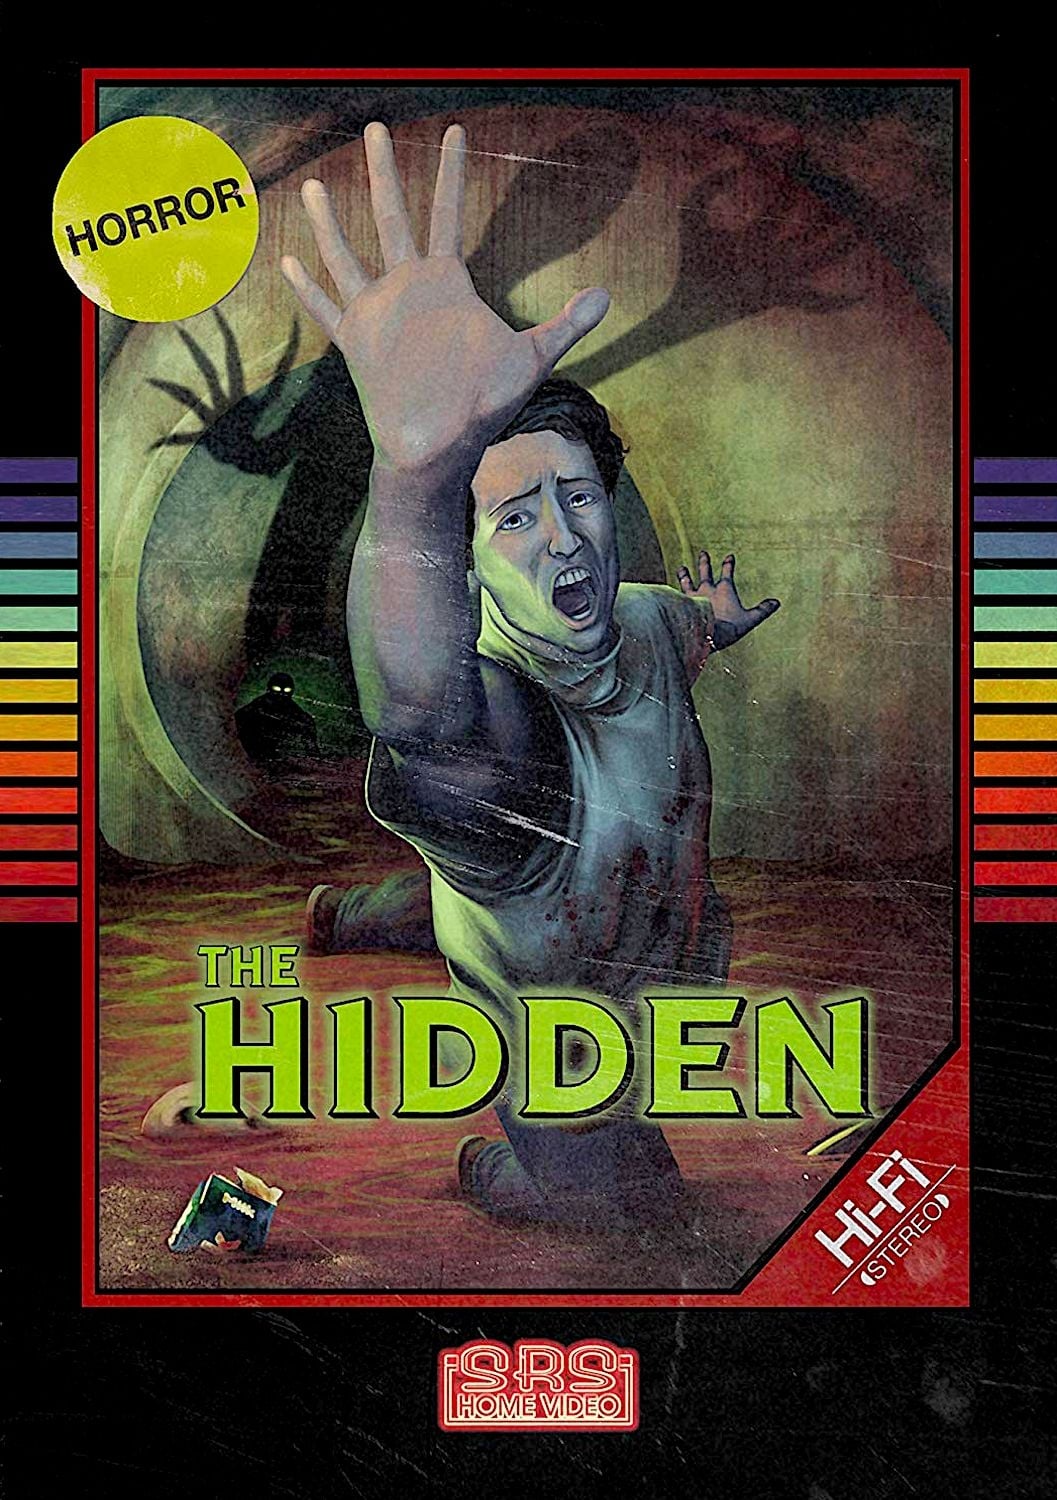 The Hidden (1993)